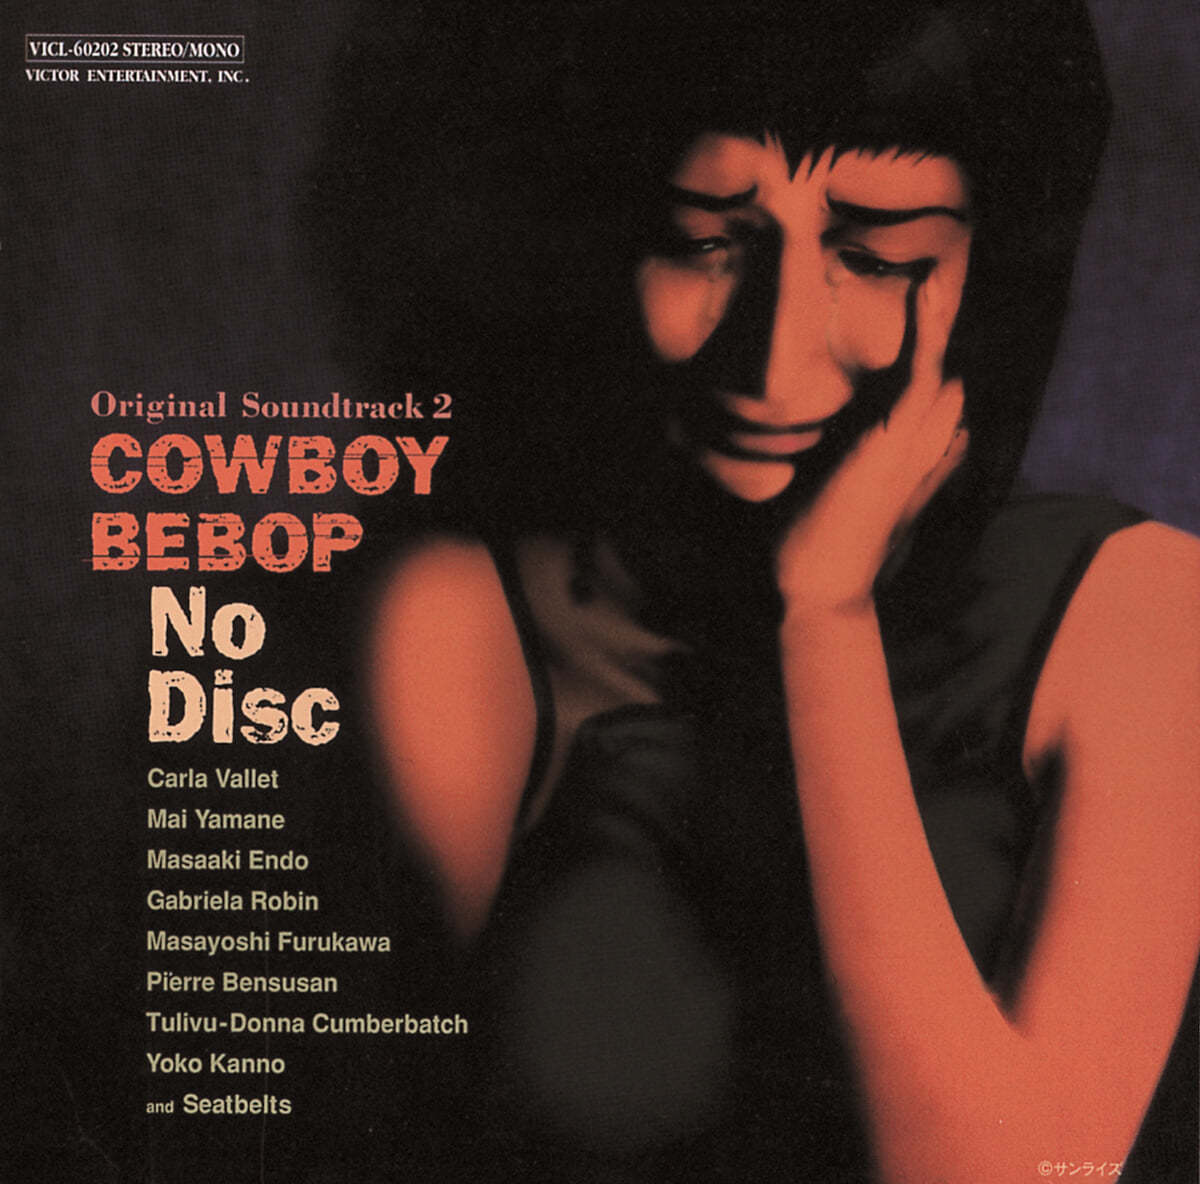 카우보이 비밥 2: 노 디스크 OST (Cowboy Bebop No Disc By Kanno Yoko 칸노 요코)